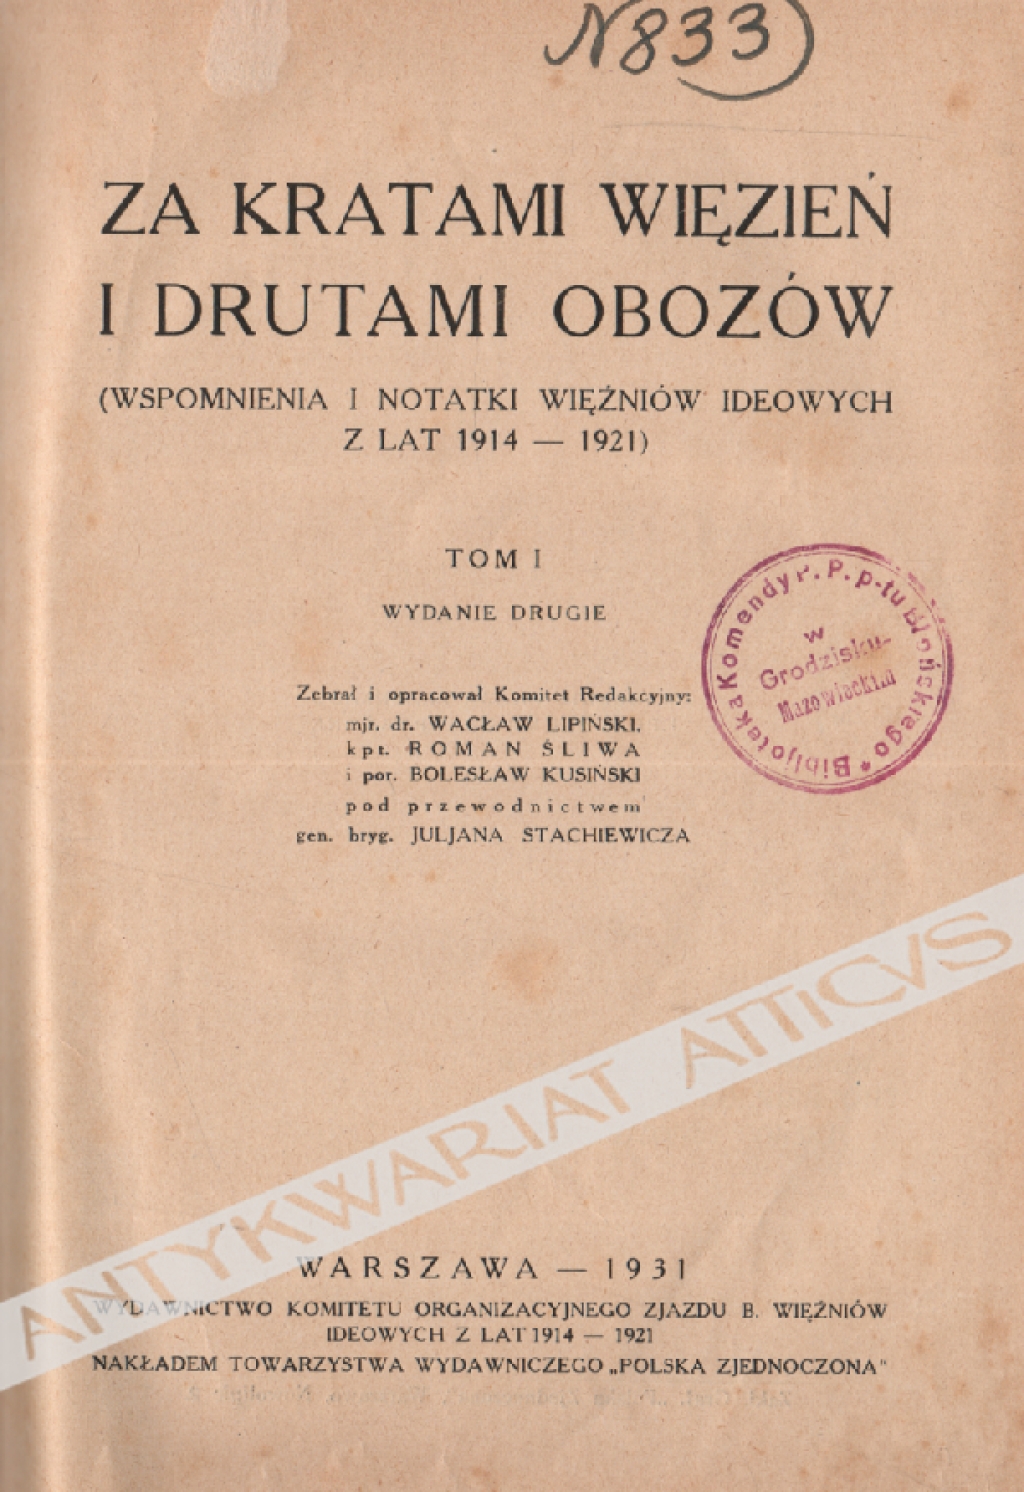 Za kratami więzień i drutami obozów (Wspomnienia i notatki więźniów ideowych z lat 1914-1921), t. I-II